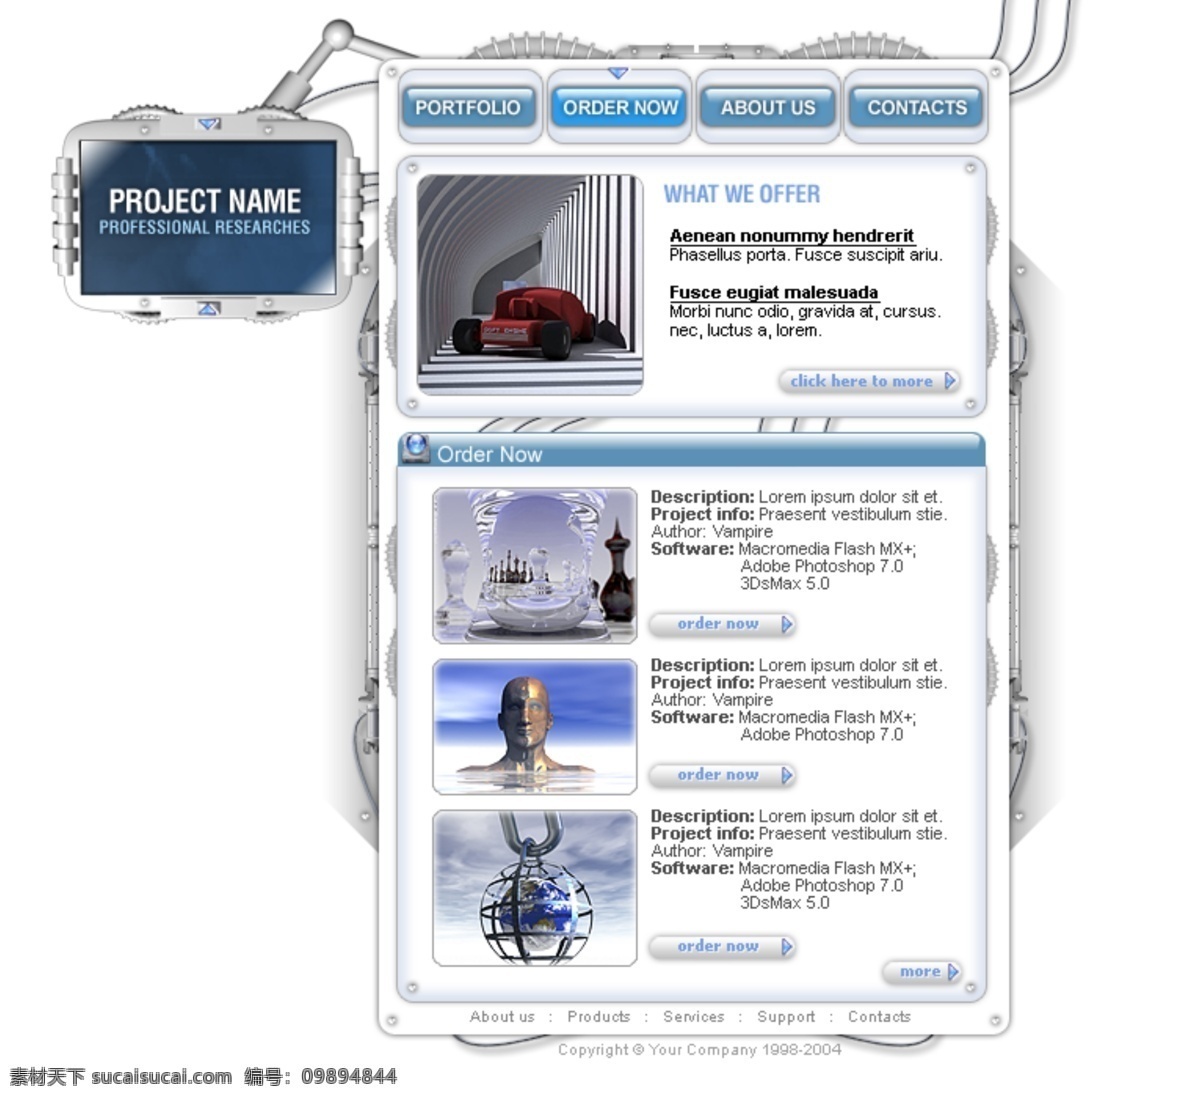 网页设计 淡蓝色 灰白色背景 简洁大方 欧美模板 网页模板 网页设计图片 源文件 个性化设计 网页素材